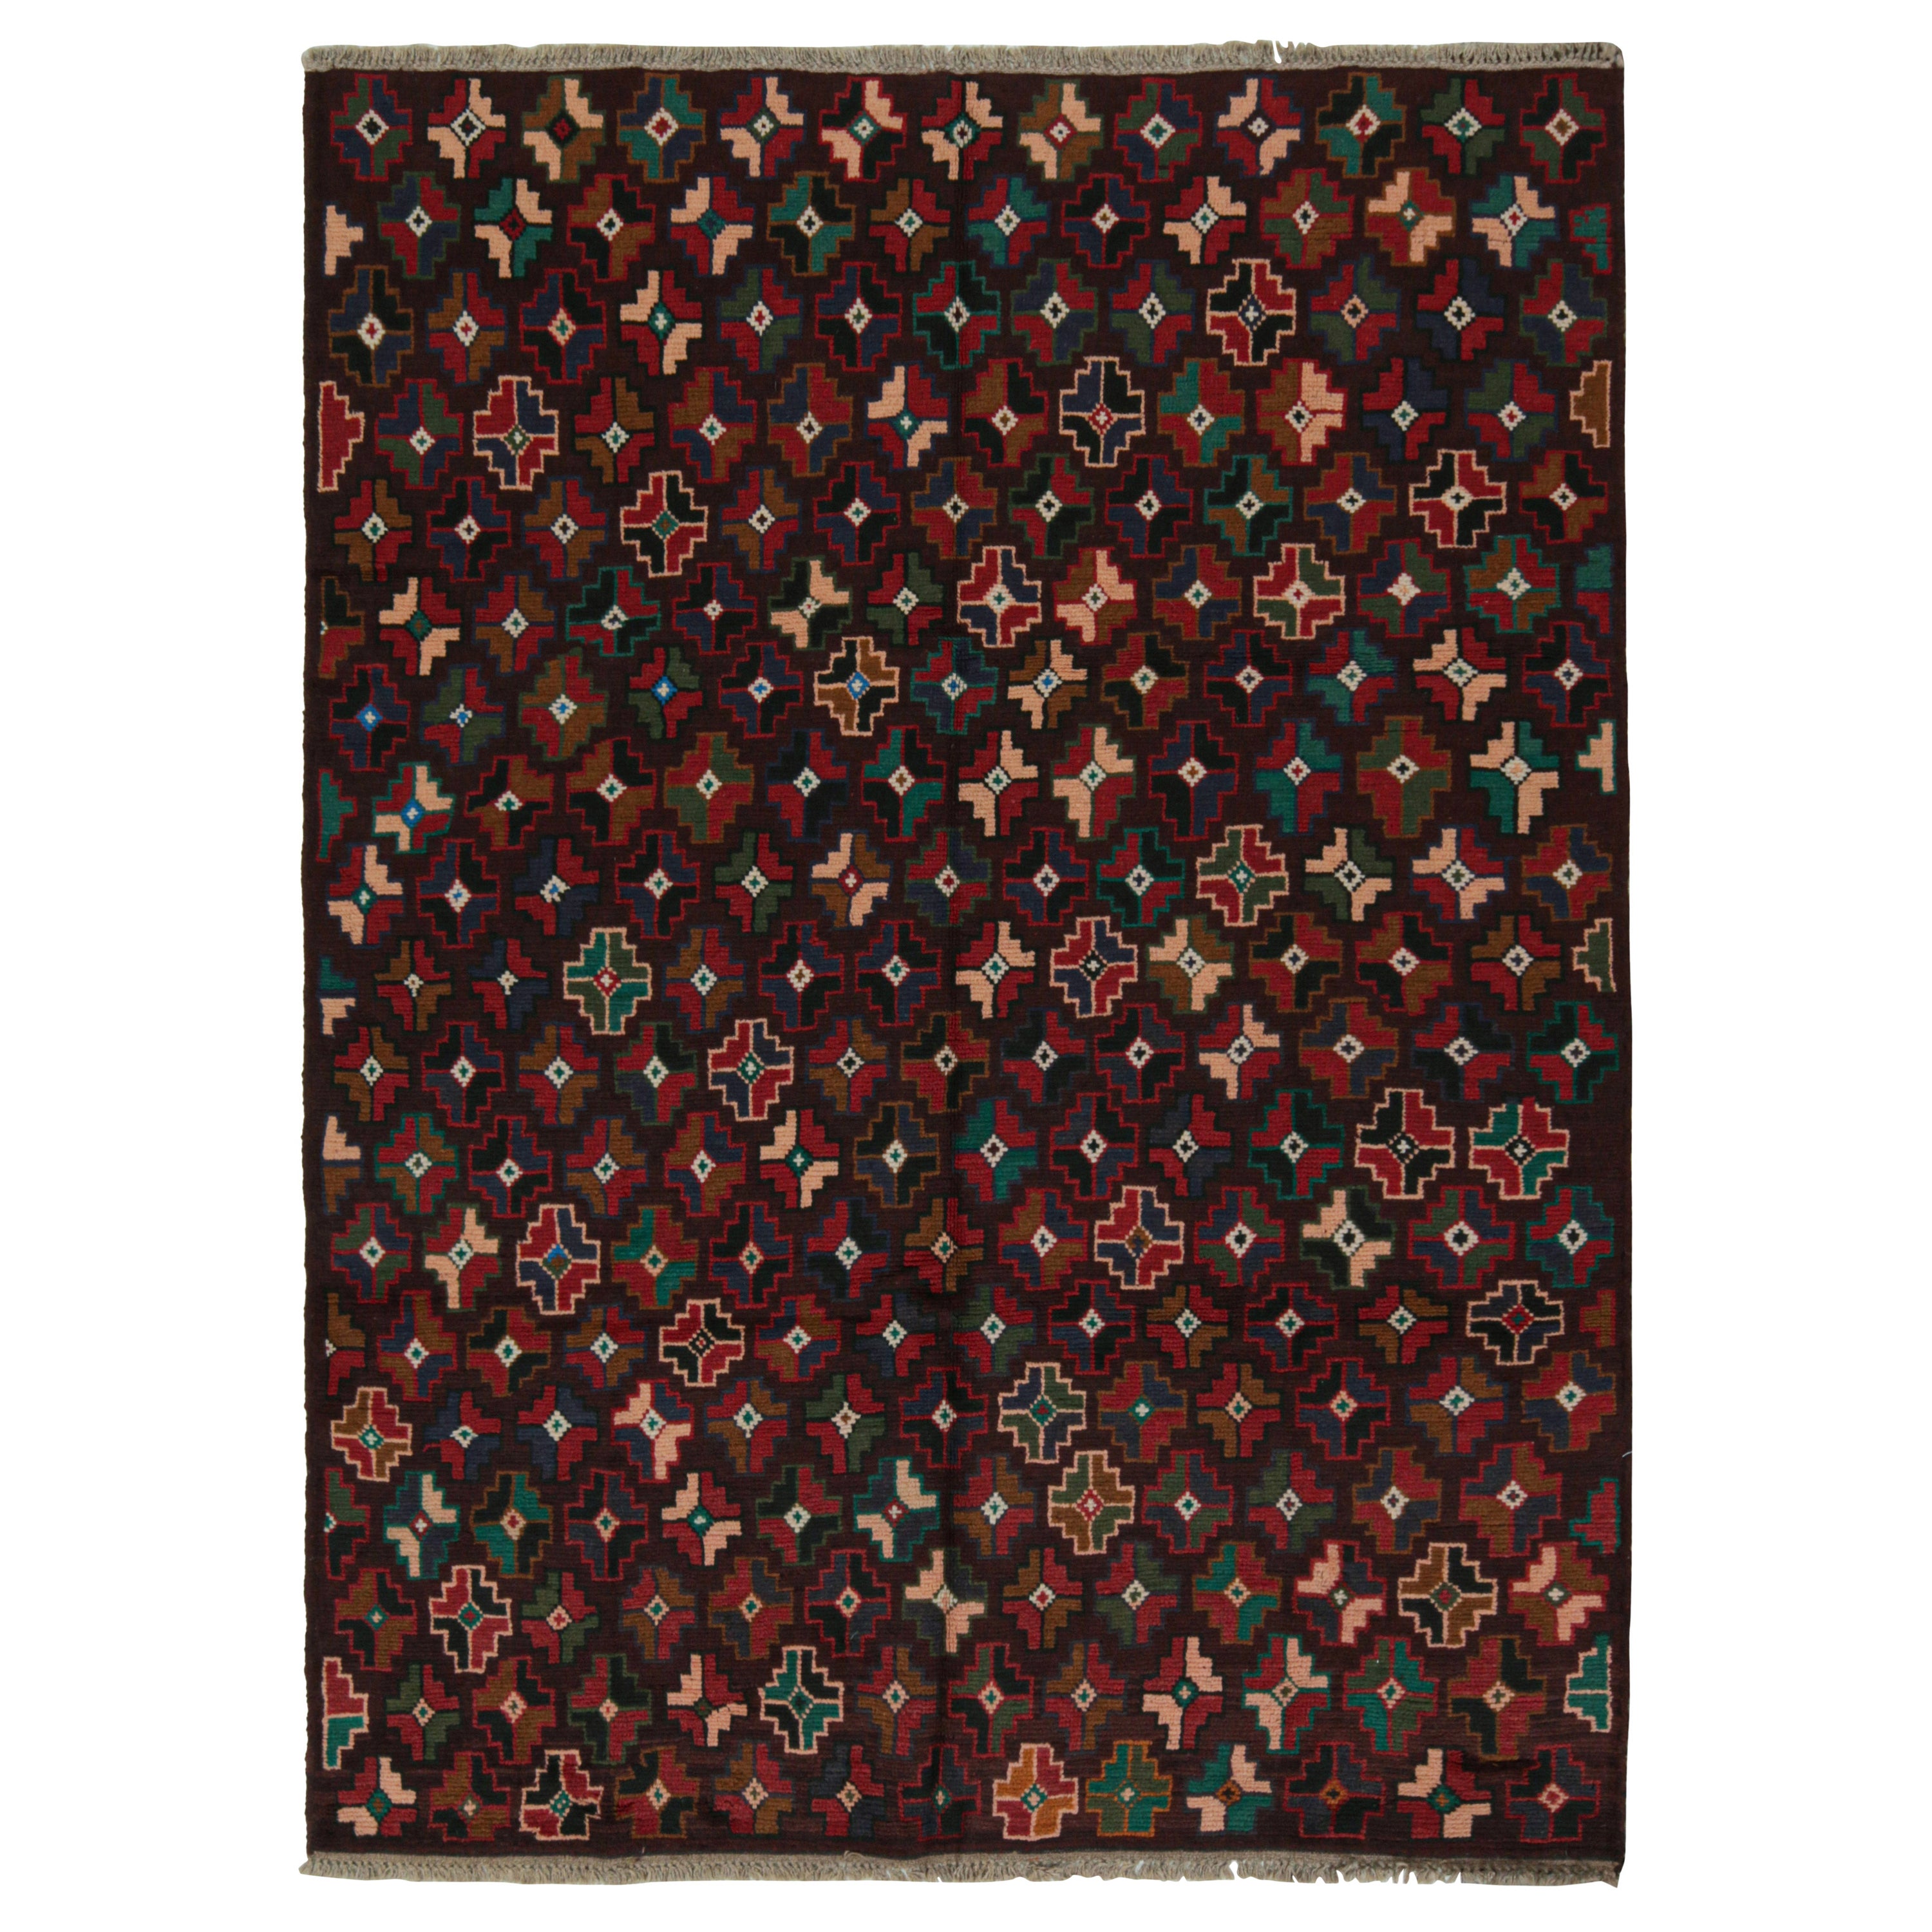 Rug & Kilim's Kohistani Baluch Tribal Rug with Colorful Geometric Patterns (tapis tribal Kohistani Baluch à motifs géométriques colorés)